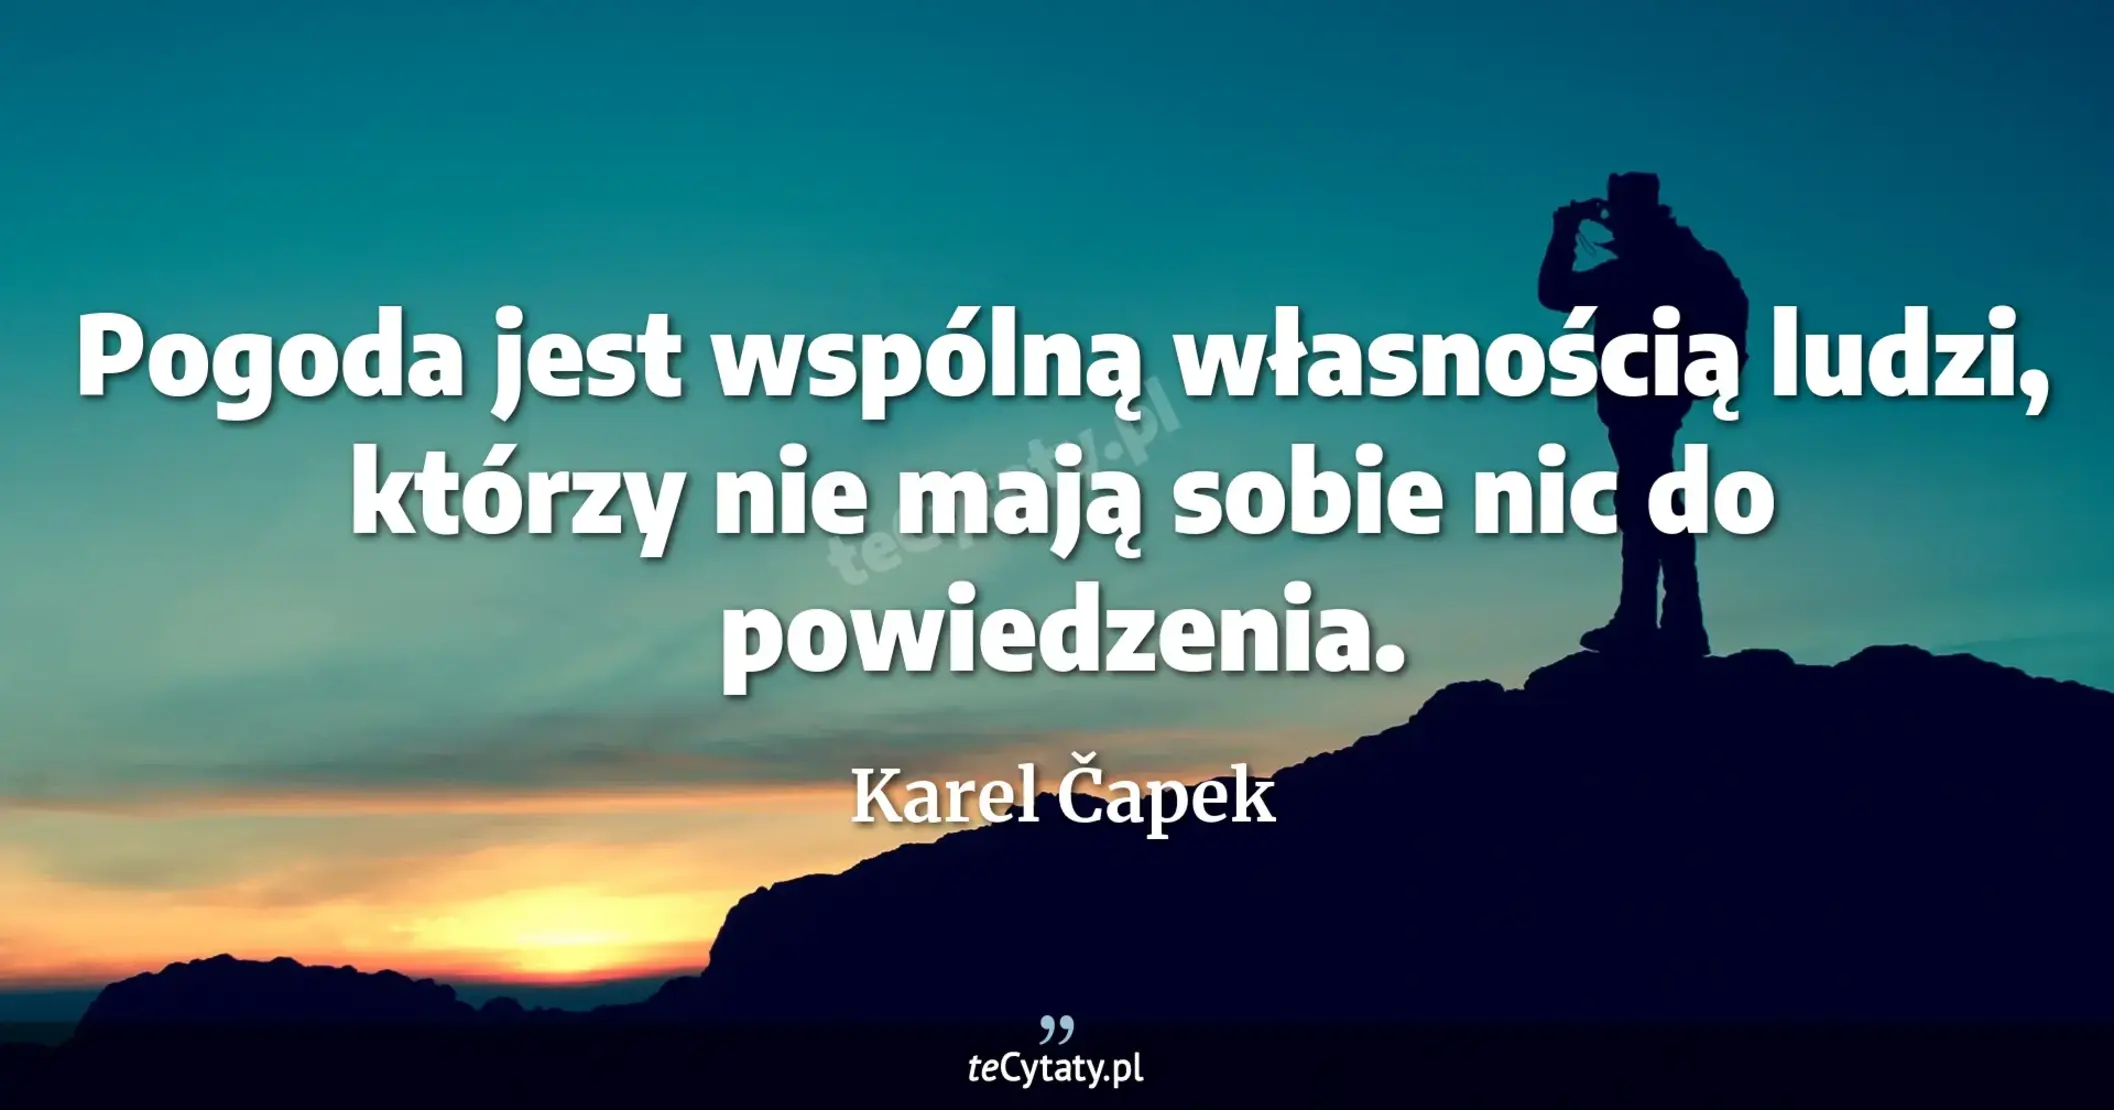 Pogoda jest wspólną własnością ludzi, którzy nie mają sobie nic do powiedzenia. - Karel Čapek